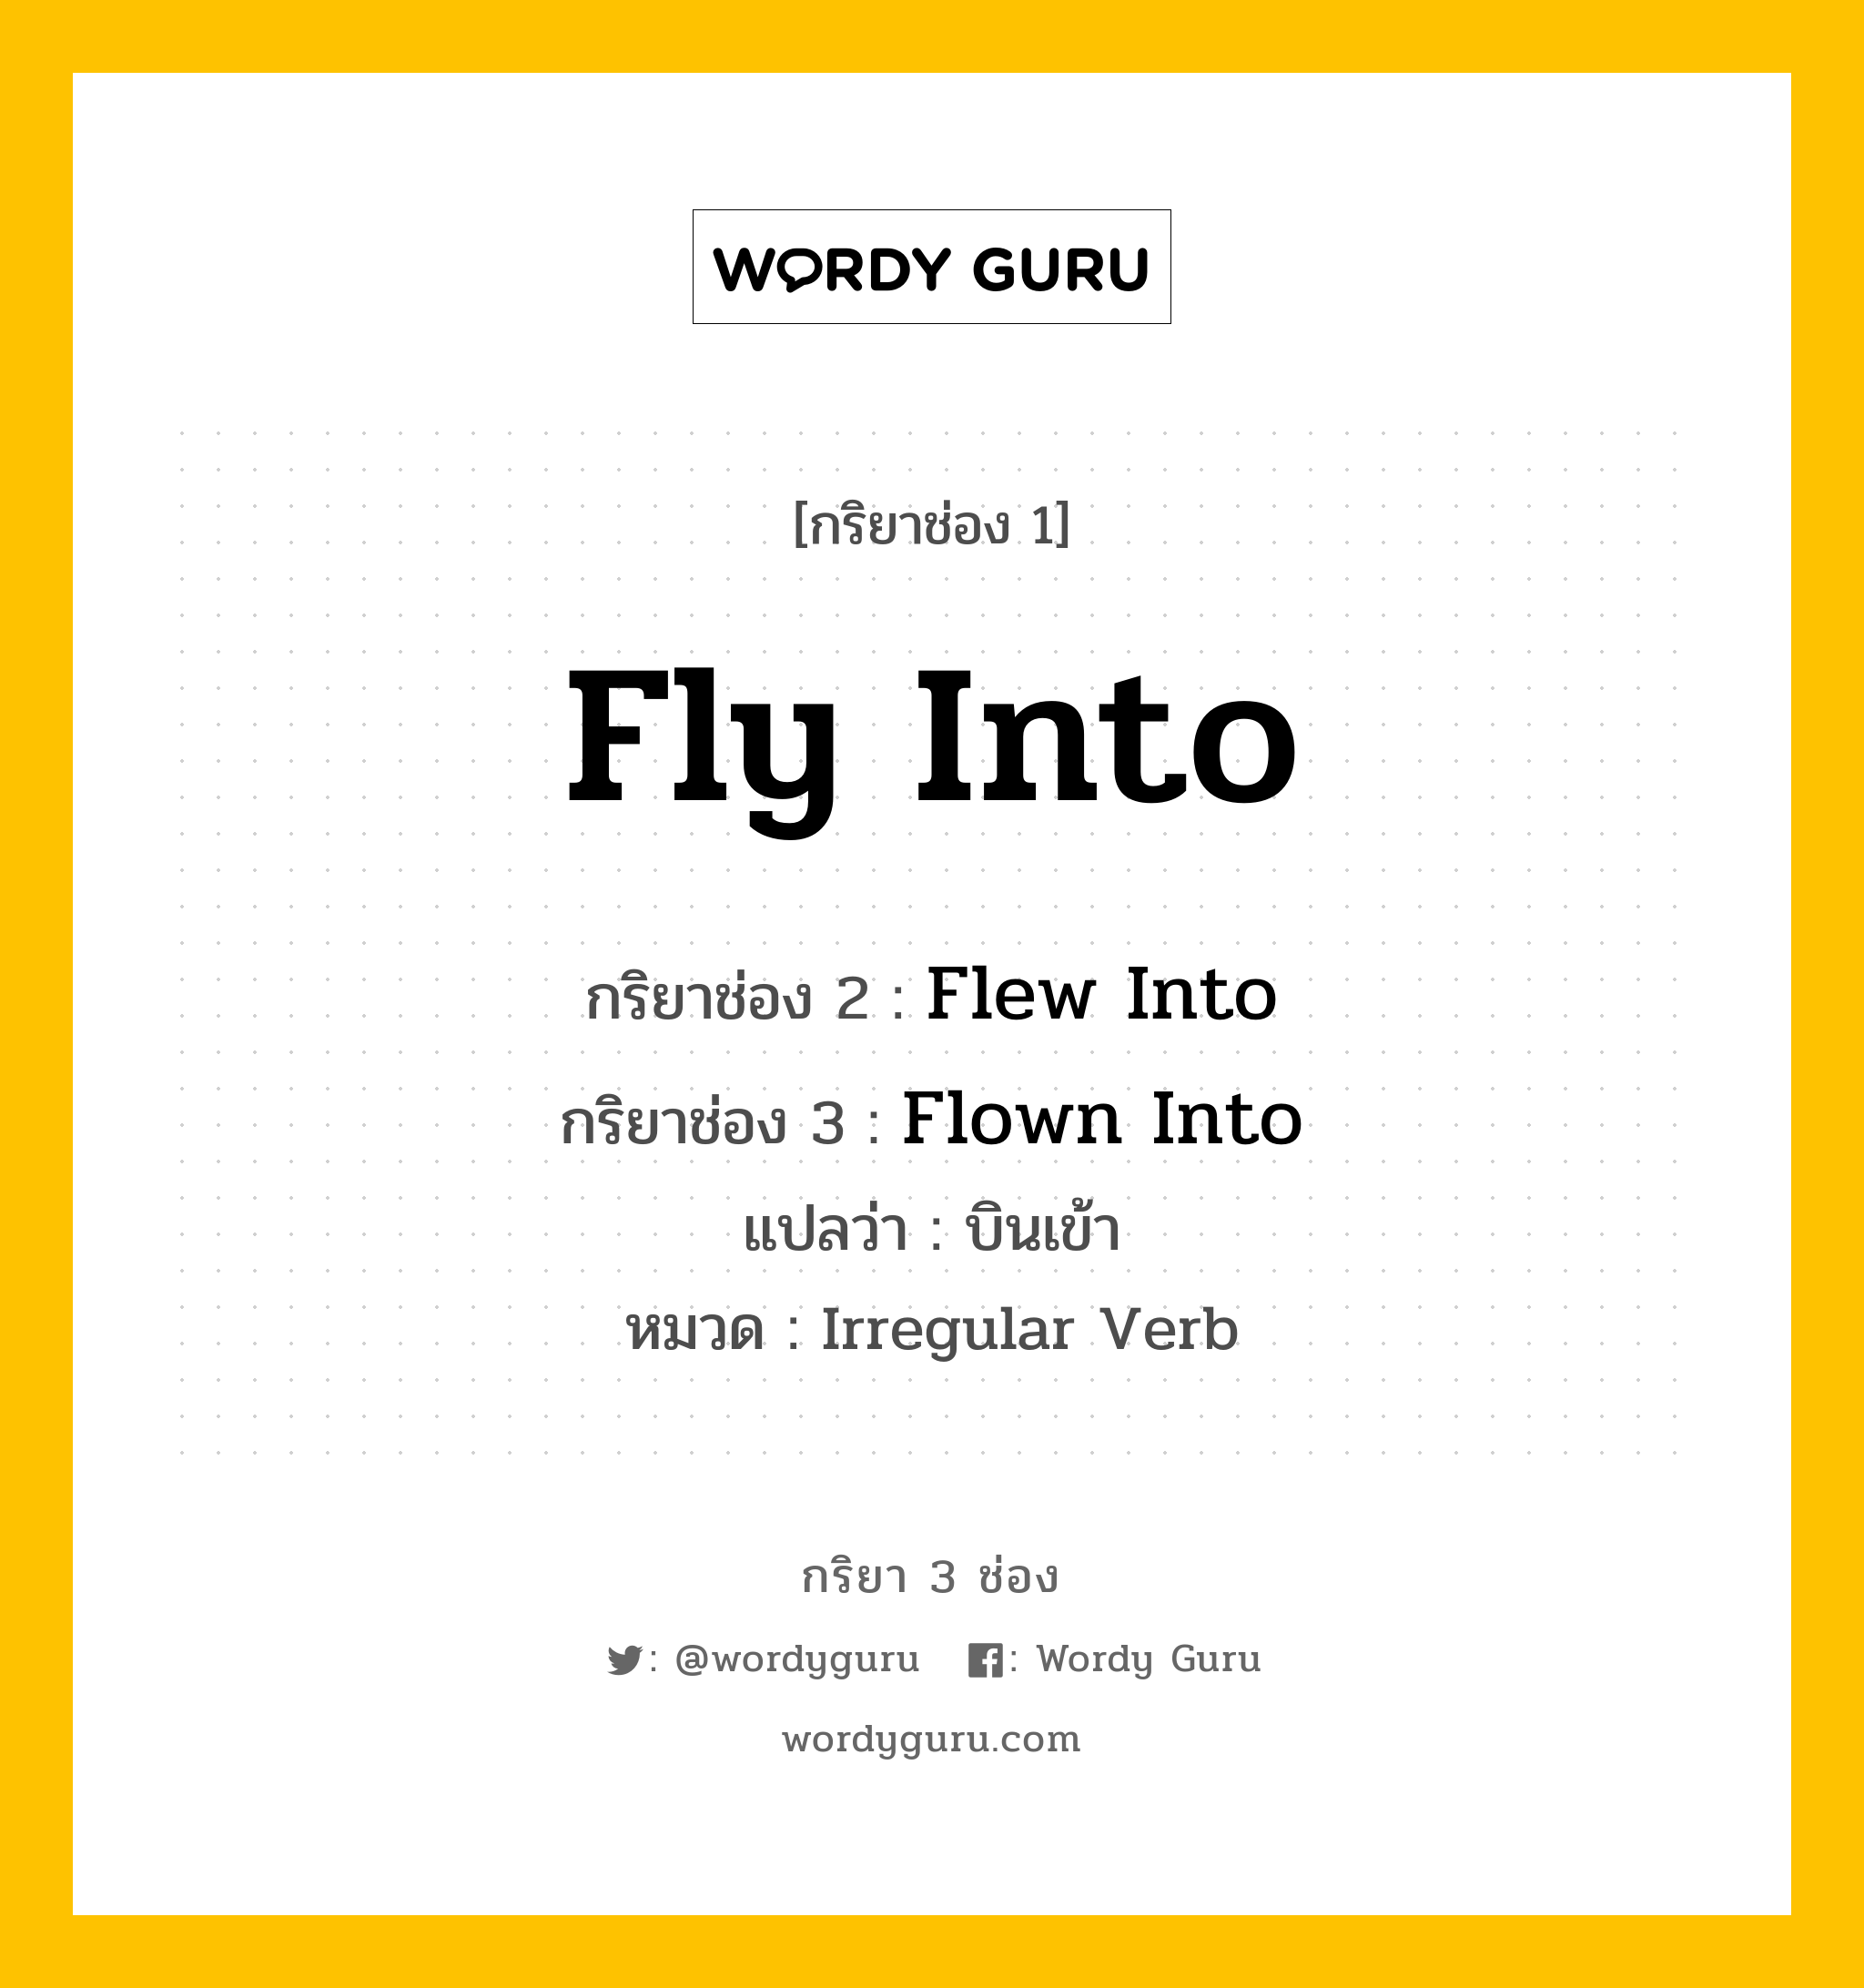 Fly Into มีกริยา 3 ช่องอะไรบ้าง? คำศัพท์ในกลุ่มประเภท Irregular Verb, กริยาช่อง 1 Fly Into กริยาช่อง 2 Flew Into กริยาช่อง 3 Flown Into แปลว่า บินเข้า หมวด Irregular Verb หมวด Irregular Verb